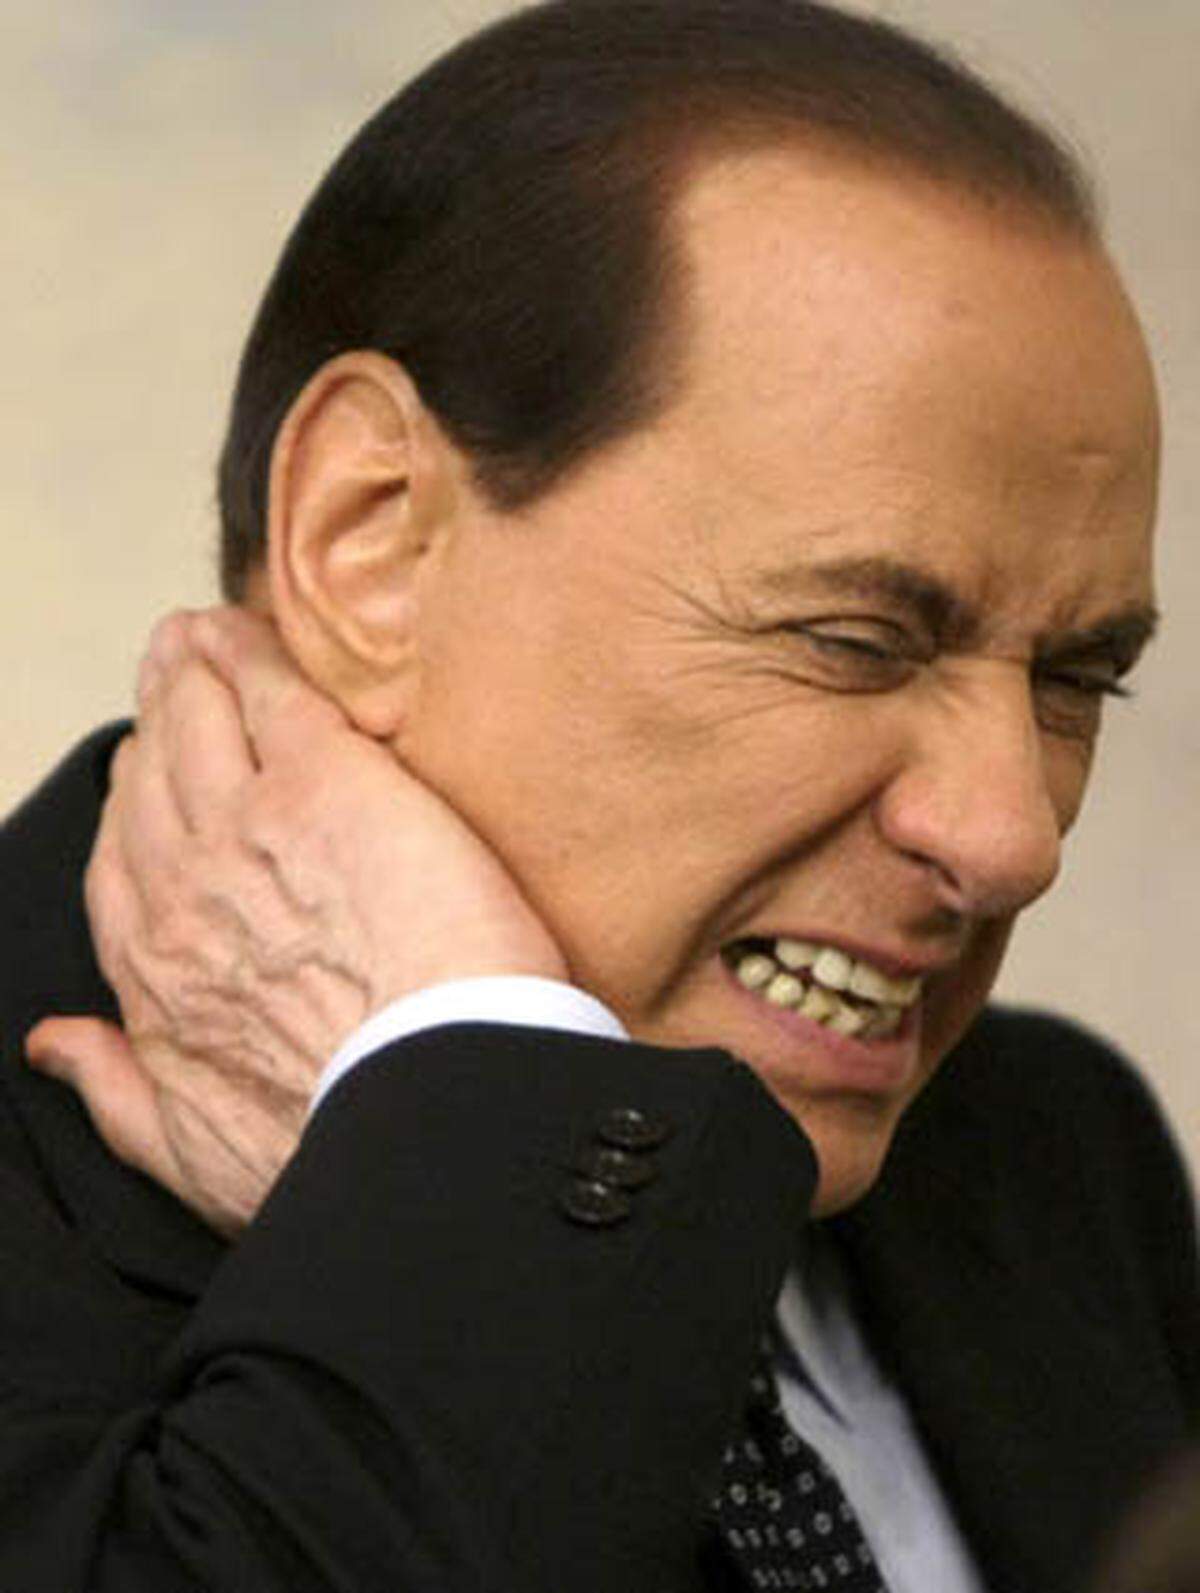 Das italienische Verfassungsgericht hebt die Immunität Berlusconis vor Strafverfolgung auf. Ein umstrittenes Immunitätsgesetz wird für nicht rechtskonform erklärt. Damit droht dem reichsten Mann Italiens die Wiederaufnahme von mindestens zwei Verfahren.